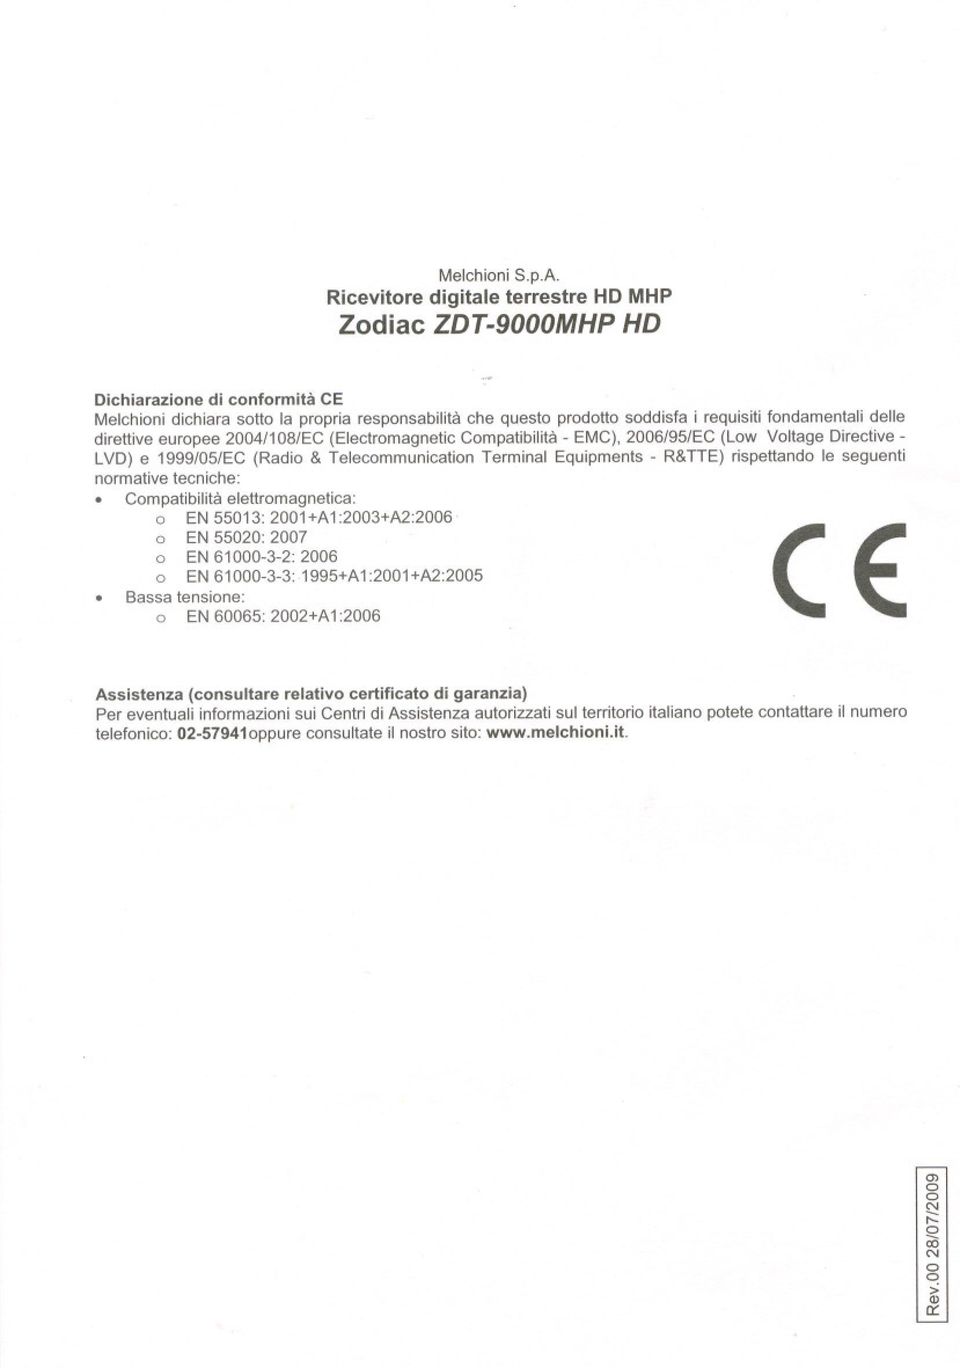 delle direttive europee 2004/108/EC (Electromagnetic Compatibilità - EMC), 2006/95/EC (Low Voltage Directive- LVD) e 1999/05/EC (Radio & Telecommunication Terminai Equipments - R&TTE)rispettando le